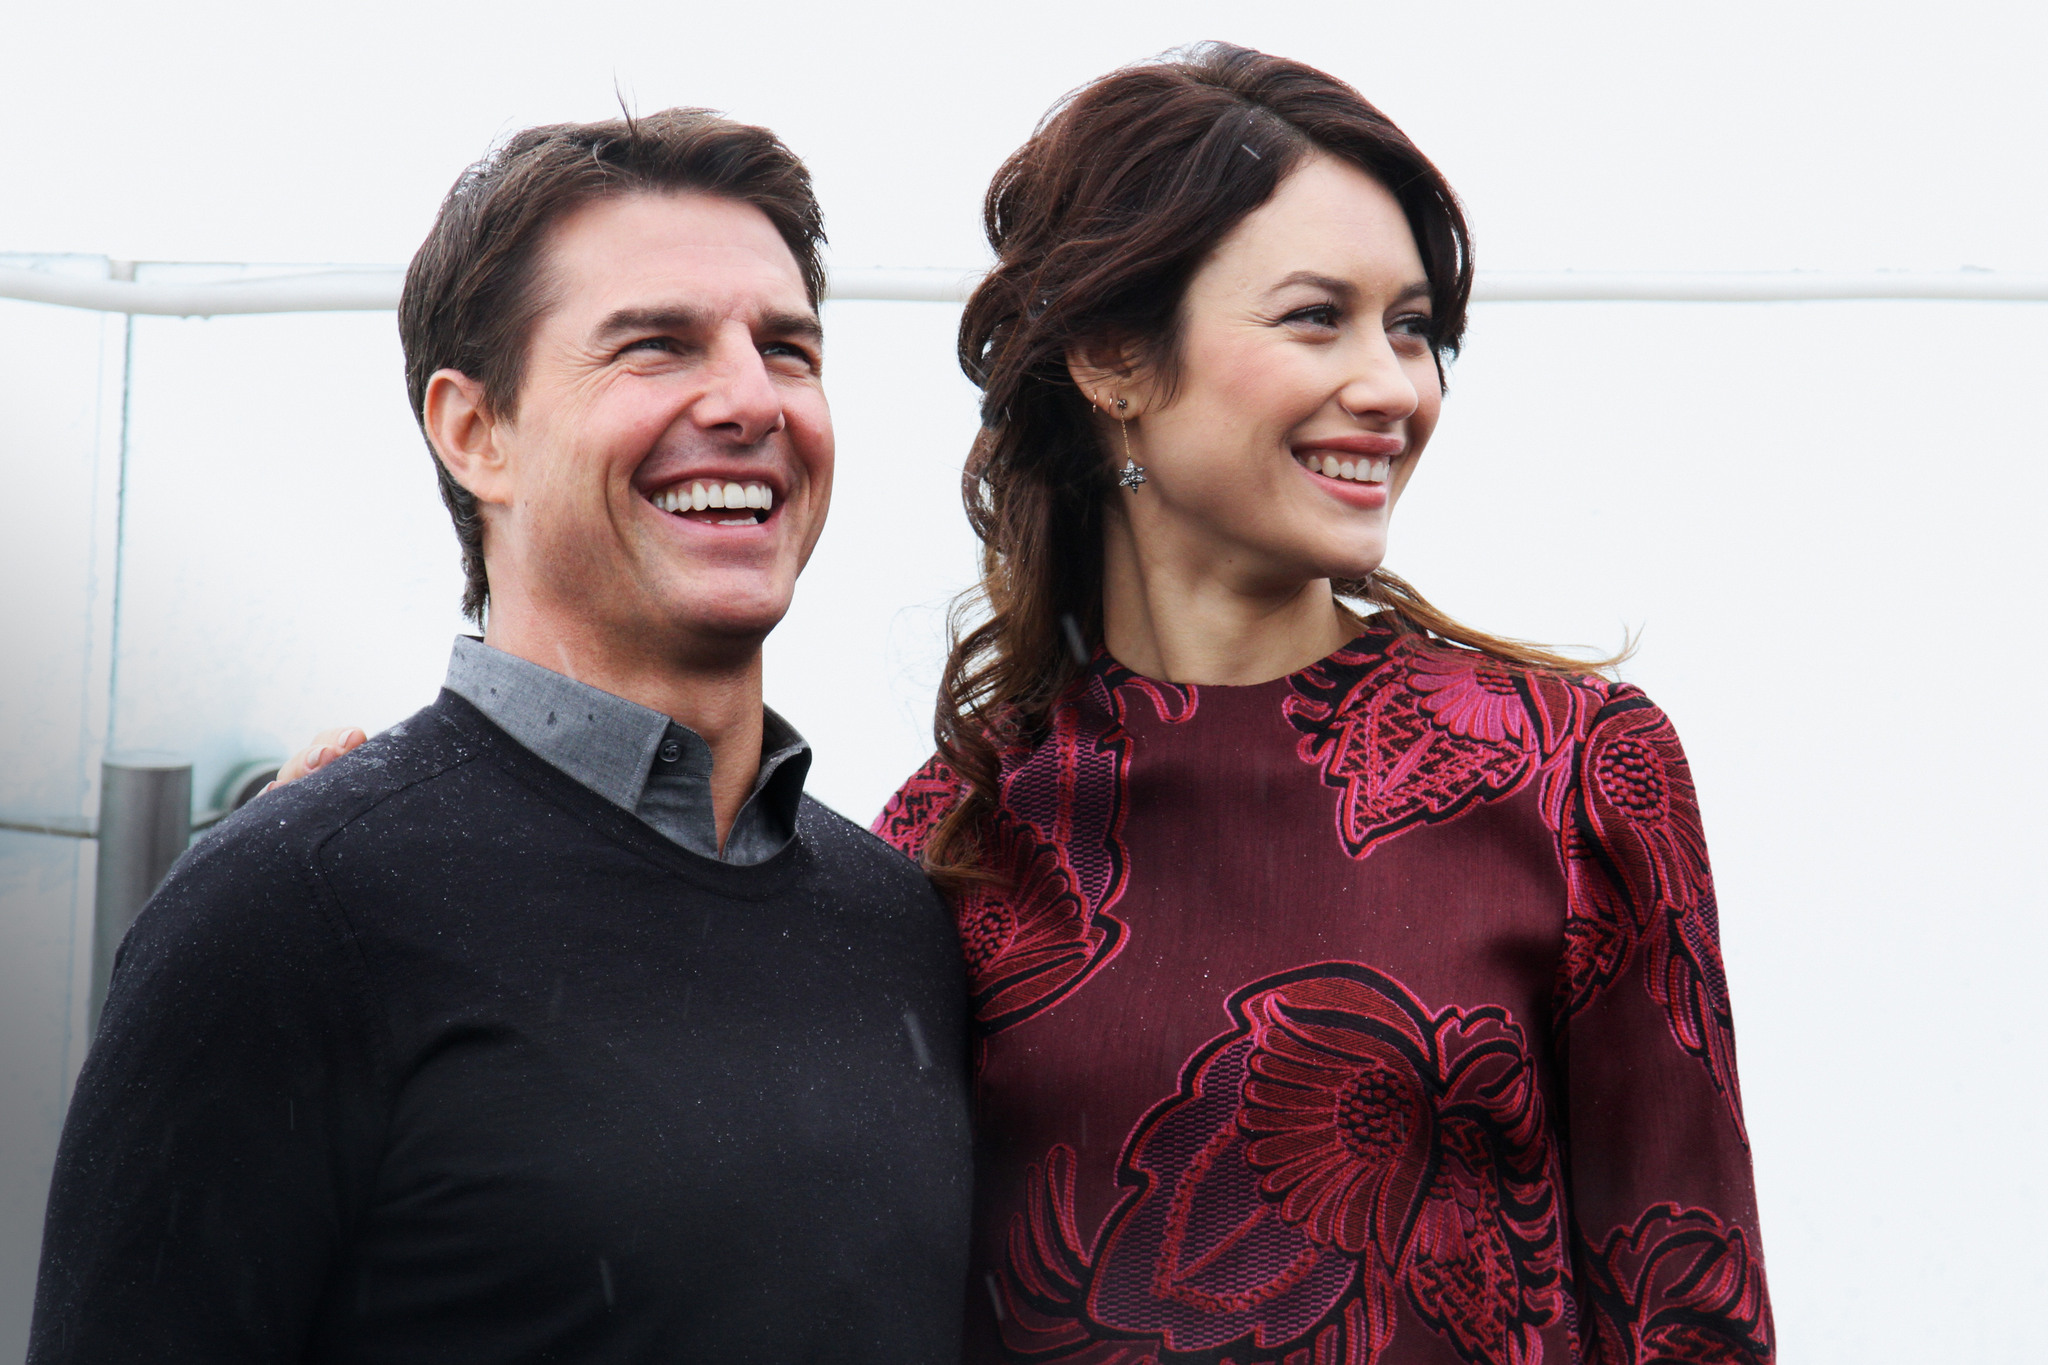 Tom Cruise and Olga Kurylenko at event of Uzmirstieji (2013)